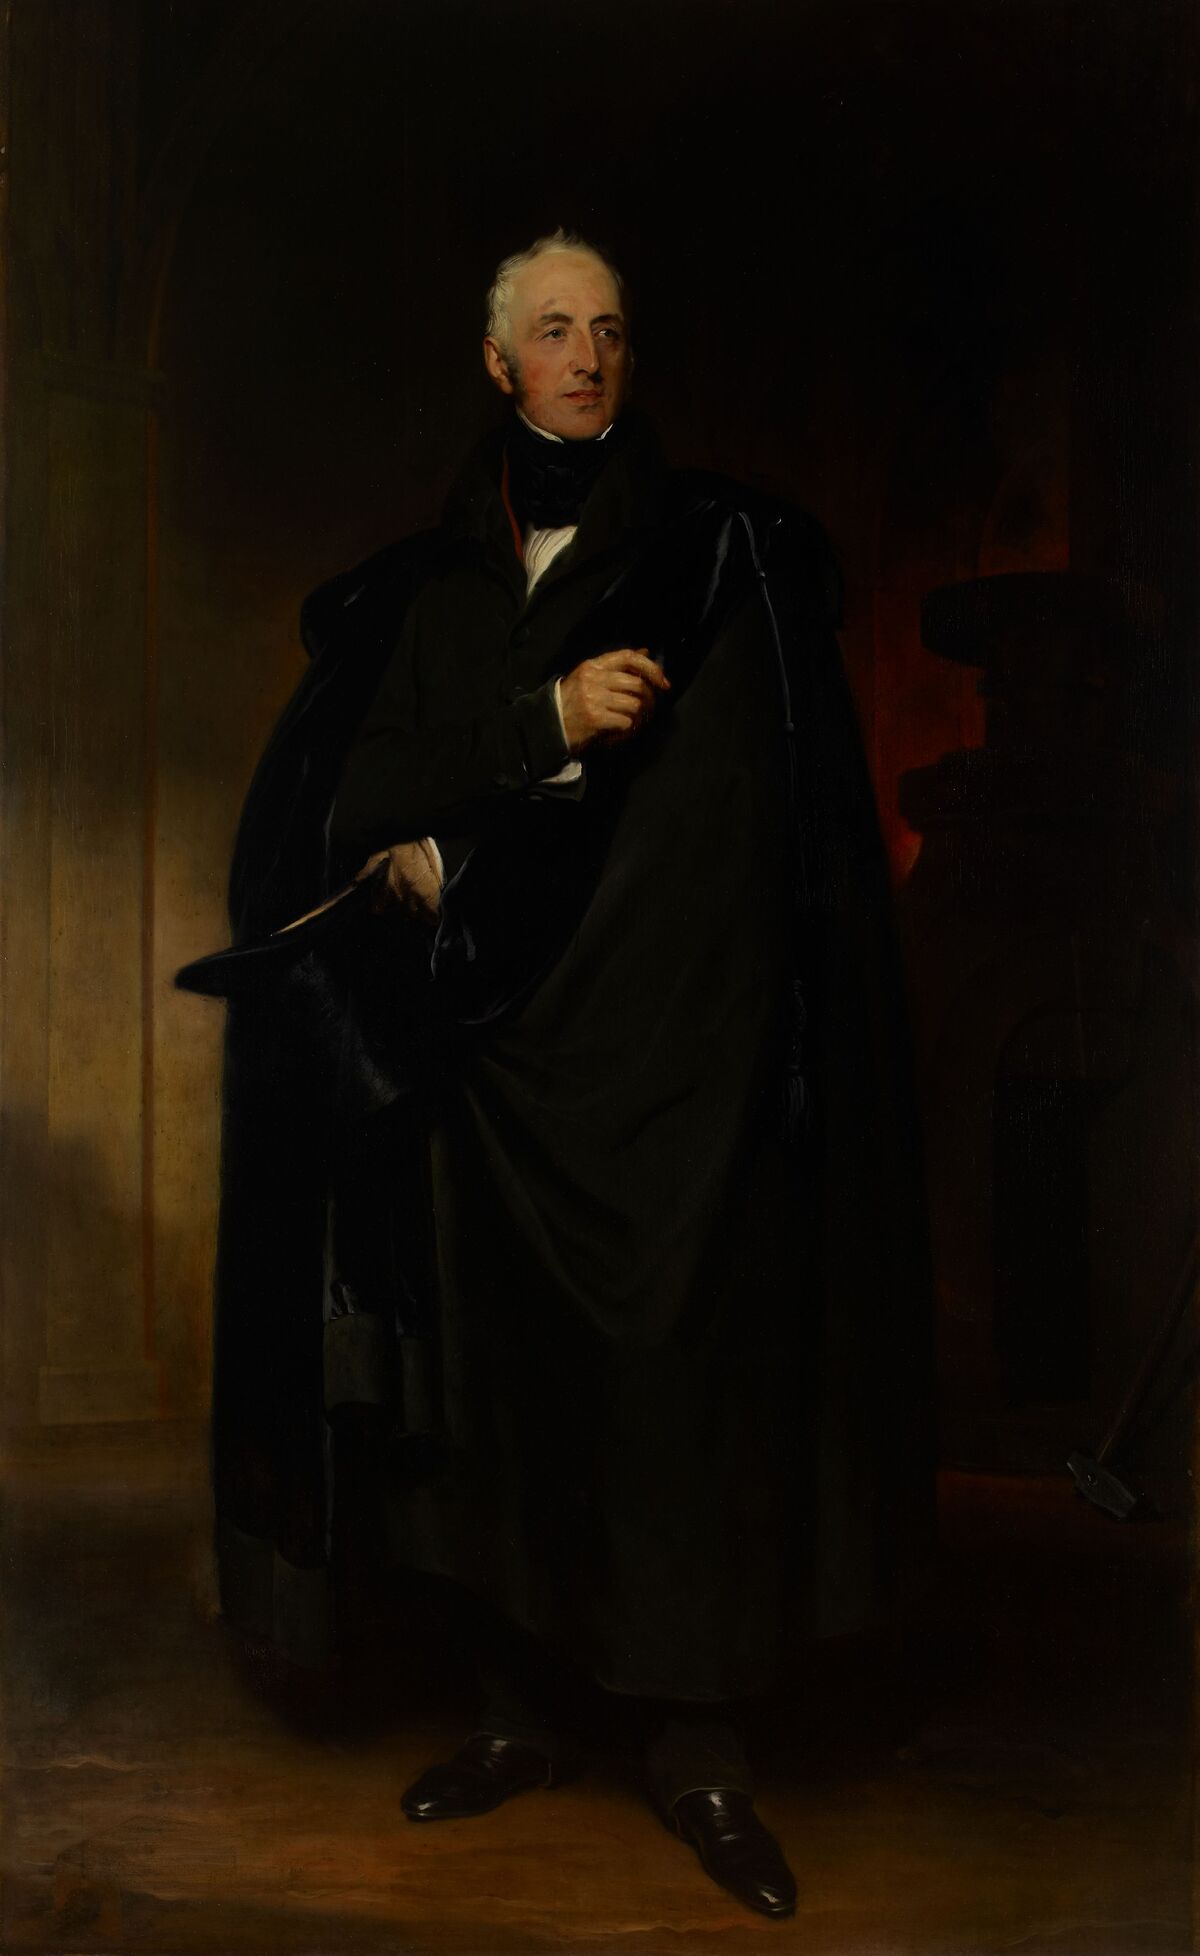 GFD 1/99: Matthew Robinson Boulton (portrait by Thomas Lawrence, c. 1830)